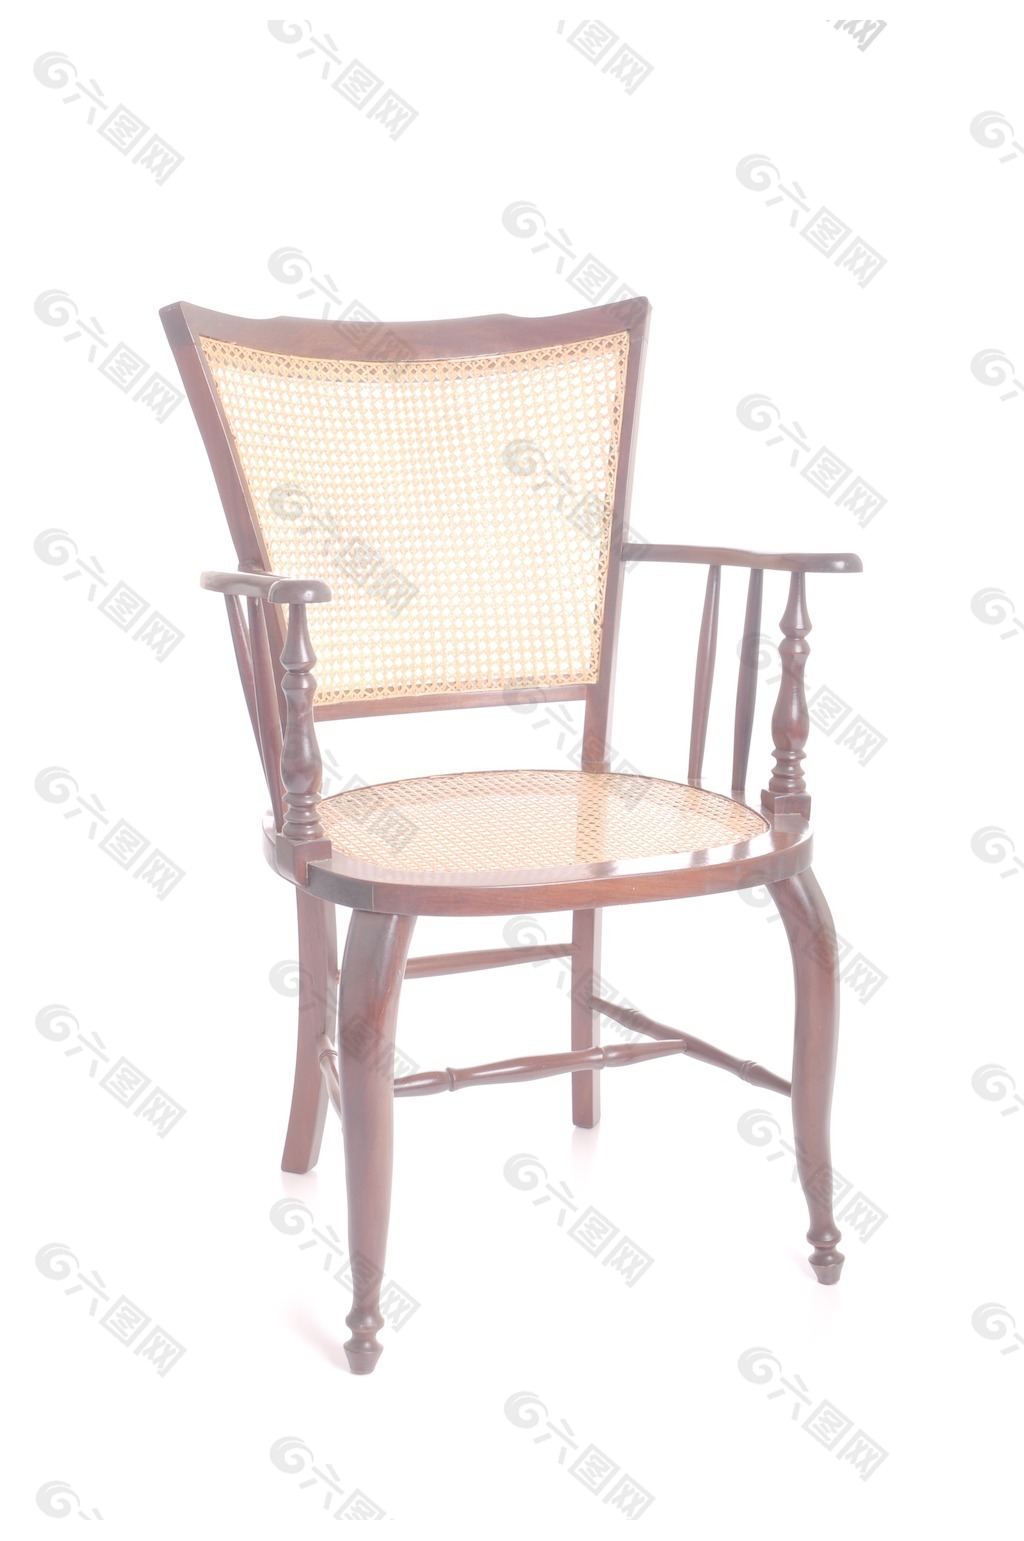 古色古香的椅子